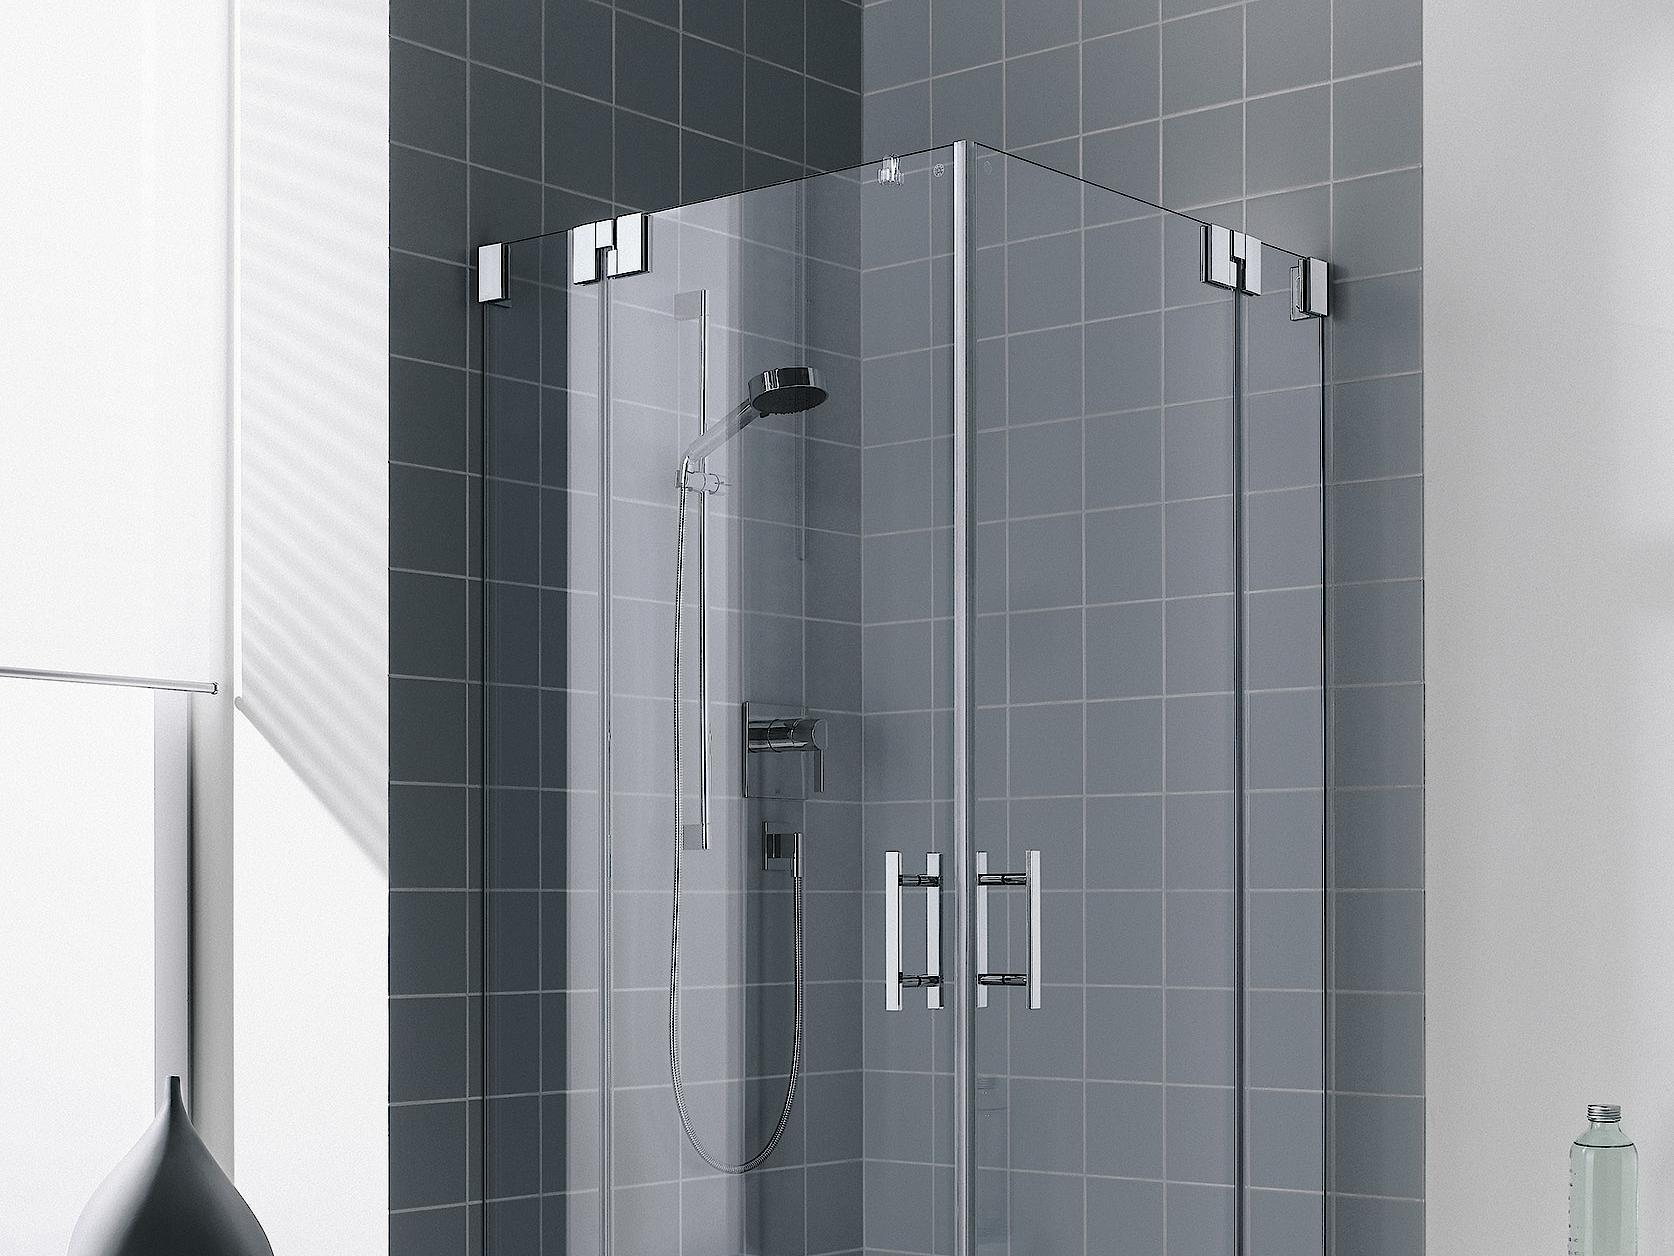 Zawiasowa kabina prysznicowa Kermi FILIA, wejście narożne 2-częściowe (drzwi wahadłowe z polami stałymi) – 1 połowa